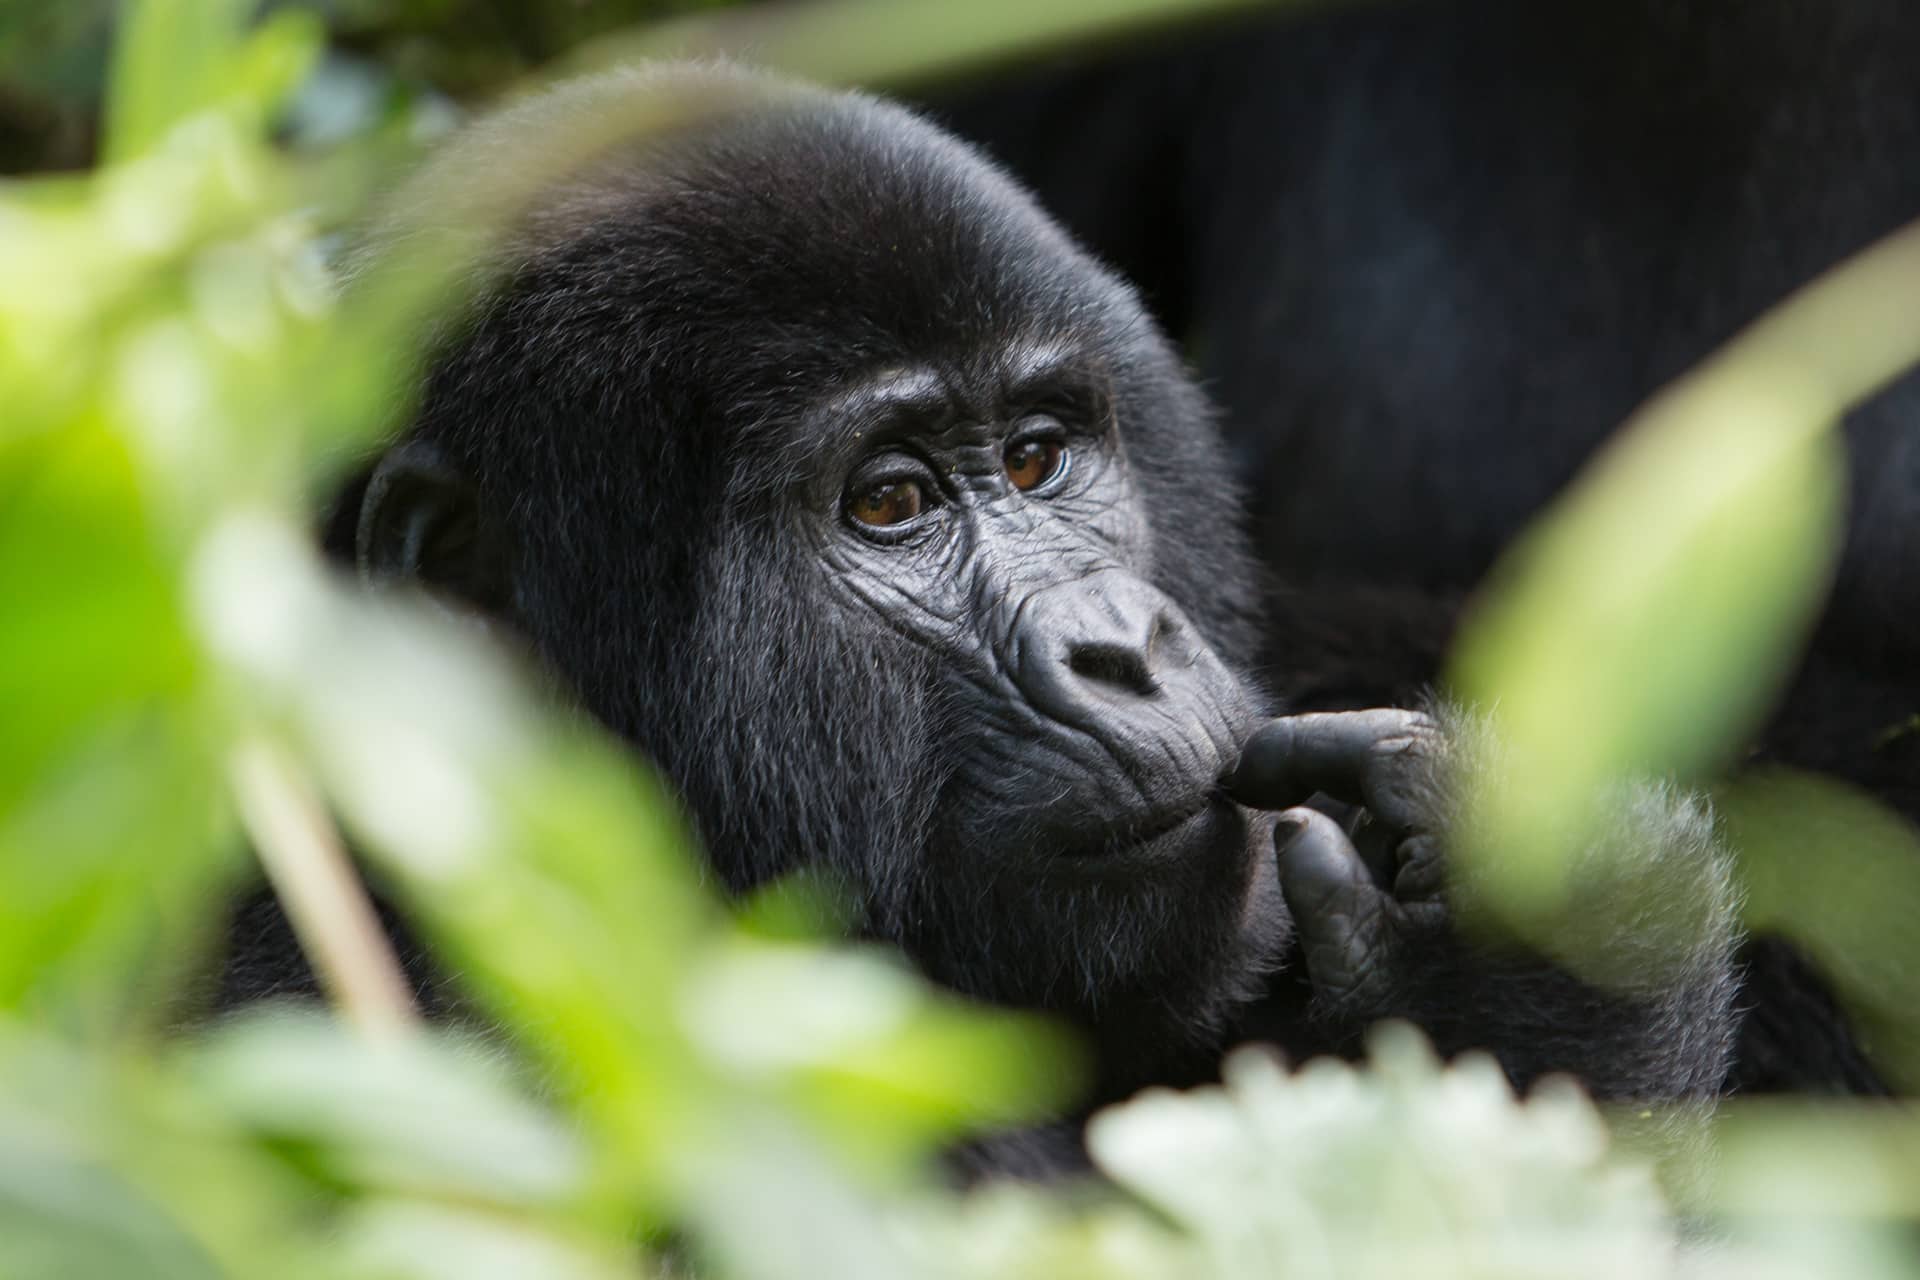 Gorilla closeup at Gorilla Trekking, Rwanda